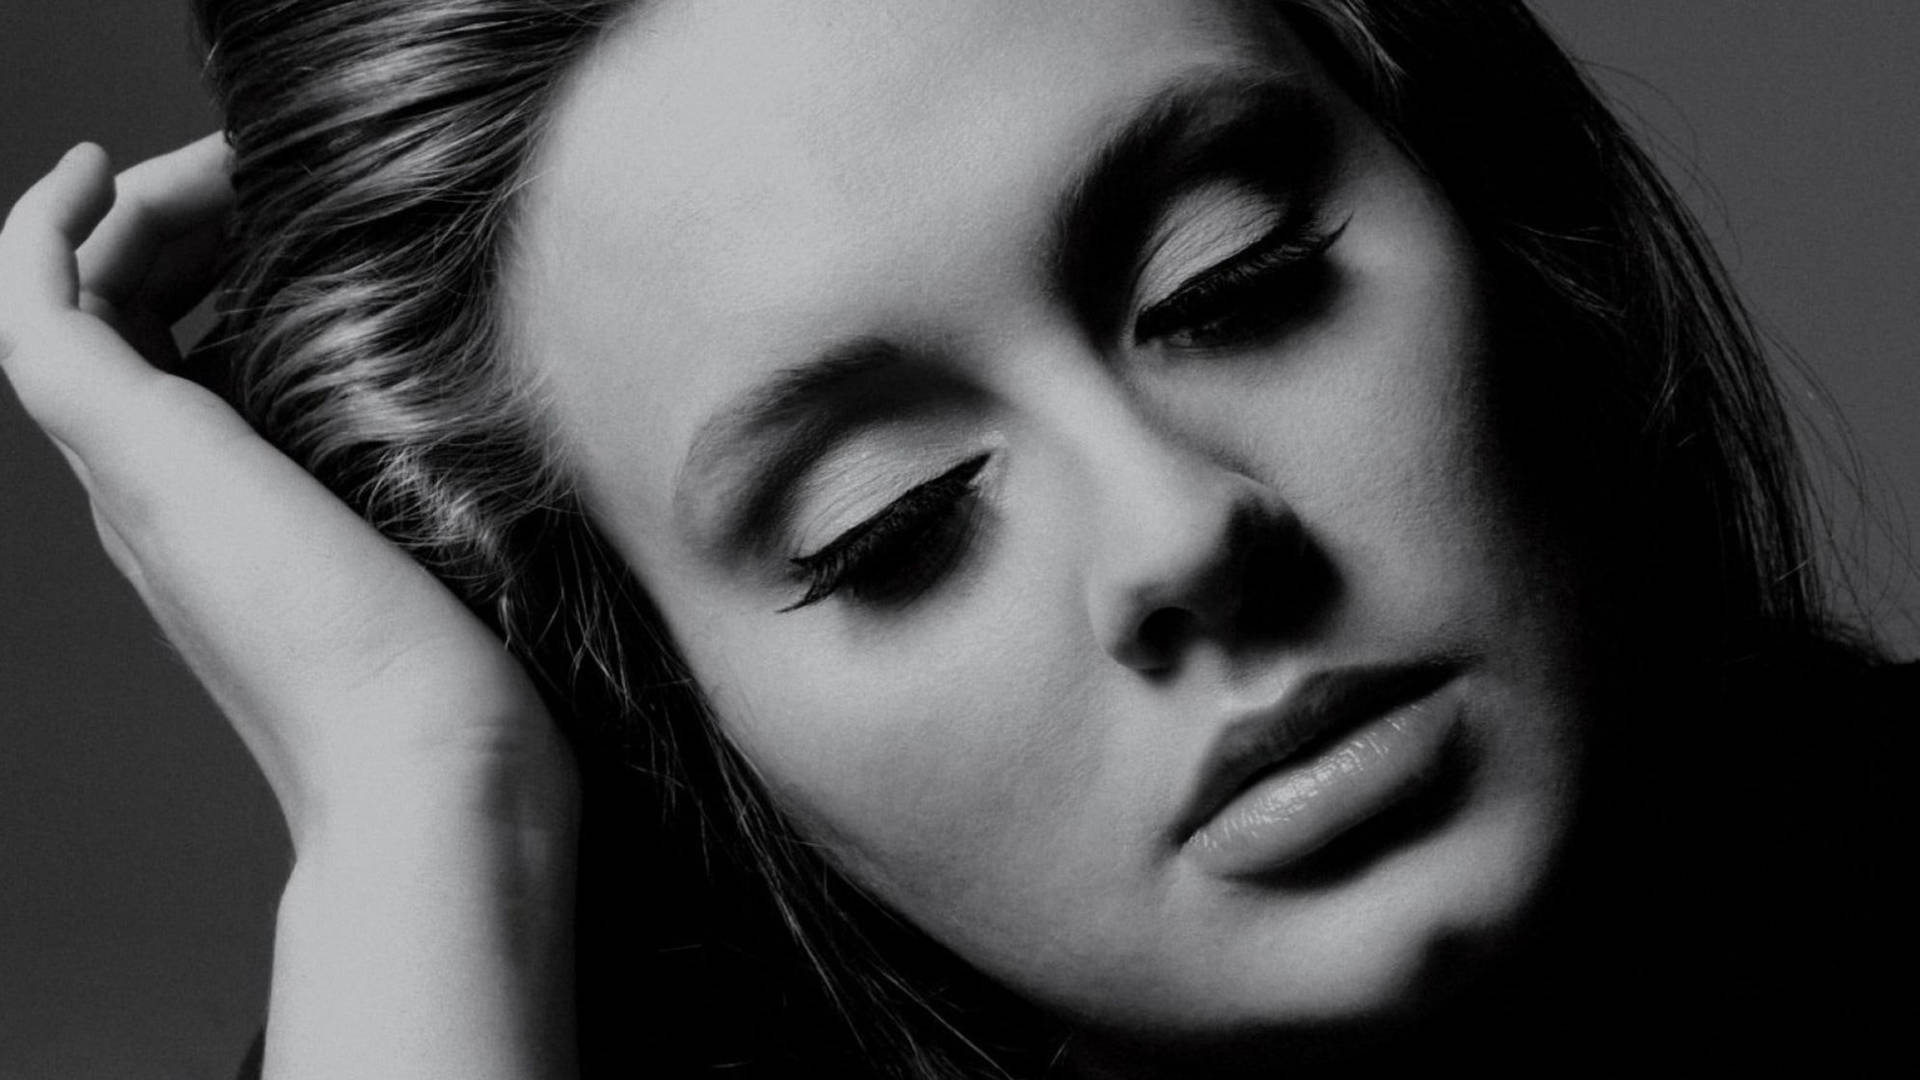 Adele 21 Album Cover